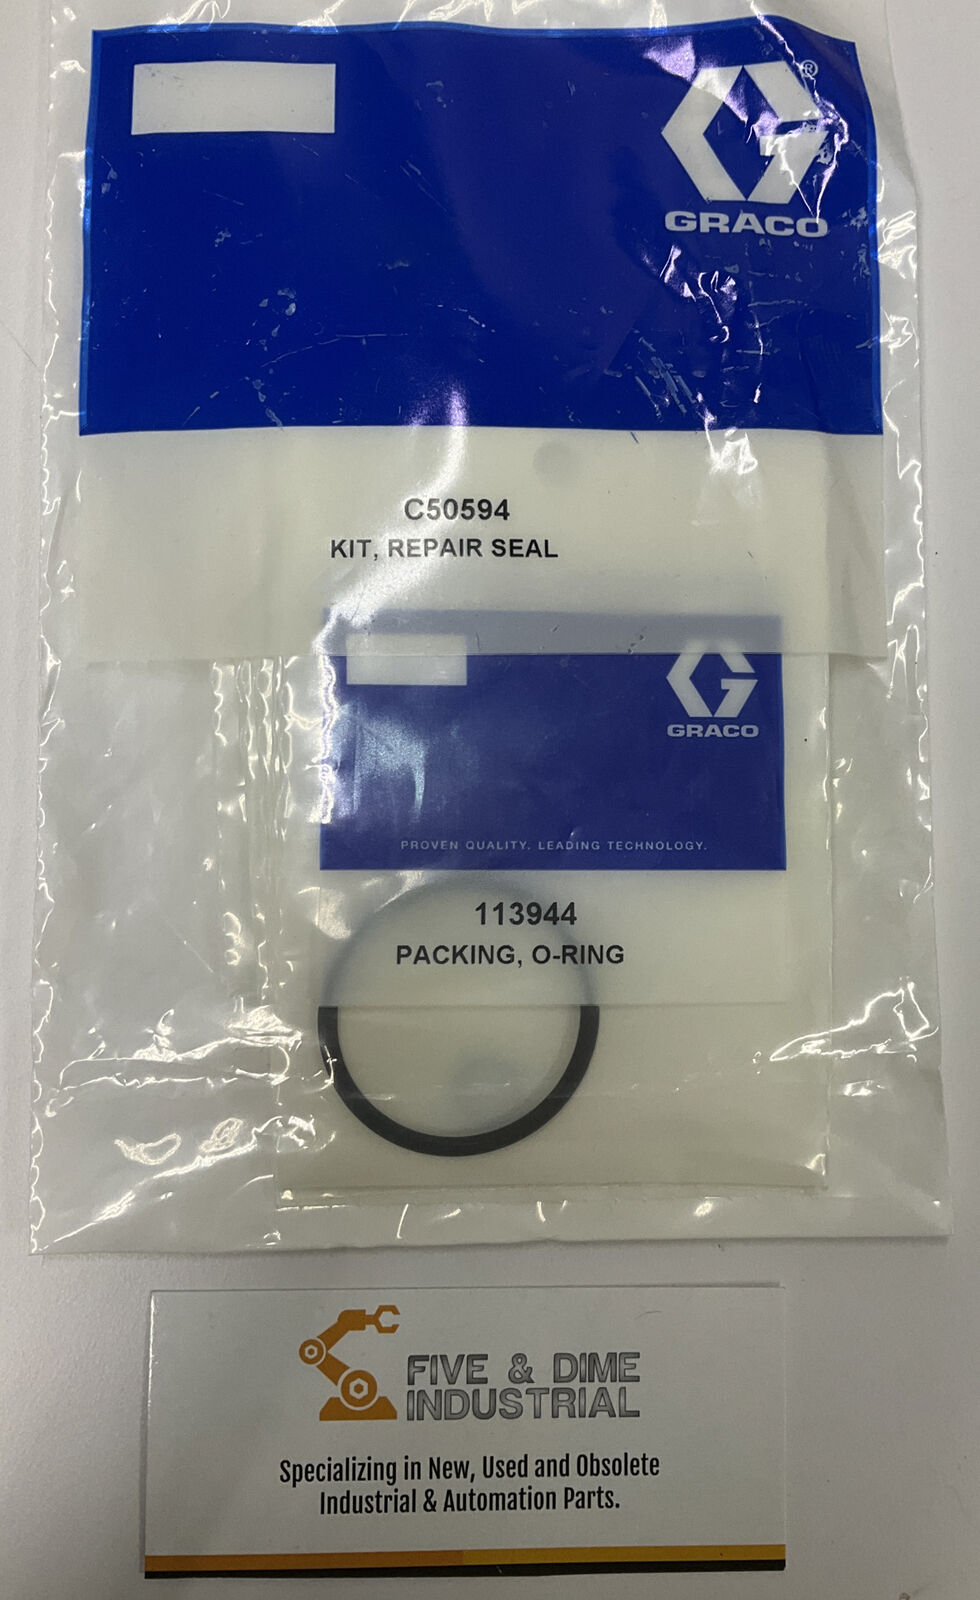 Graco C50594 Seal Kit (YE230)